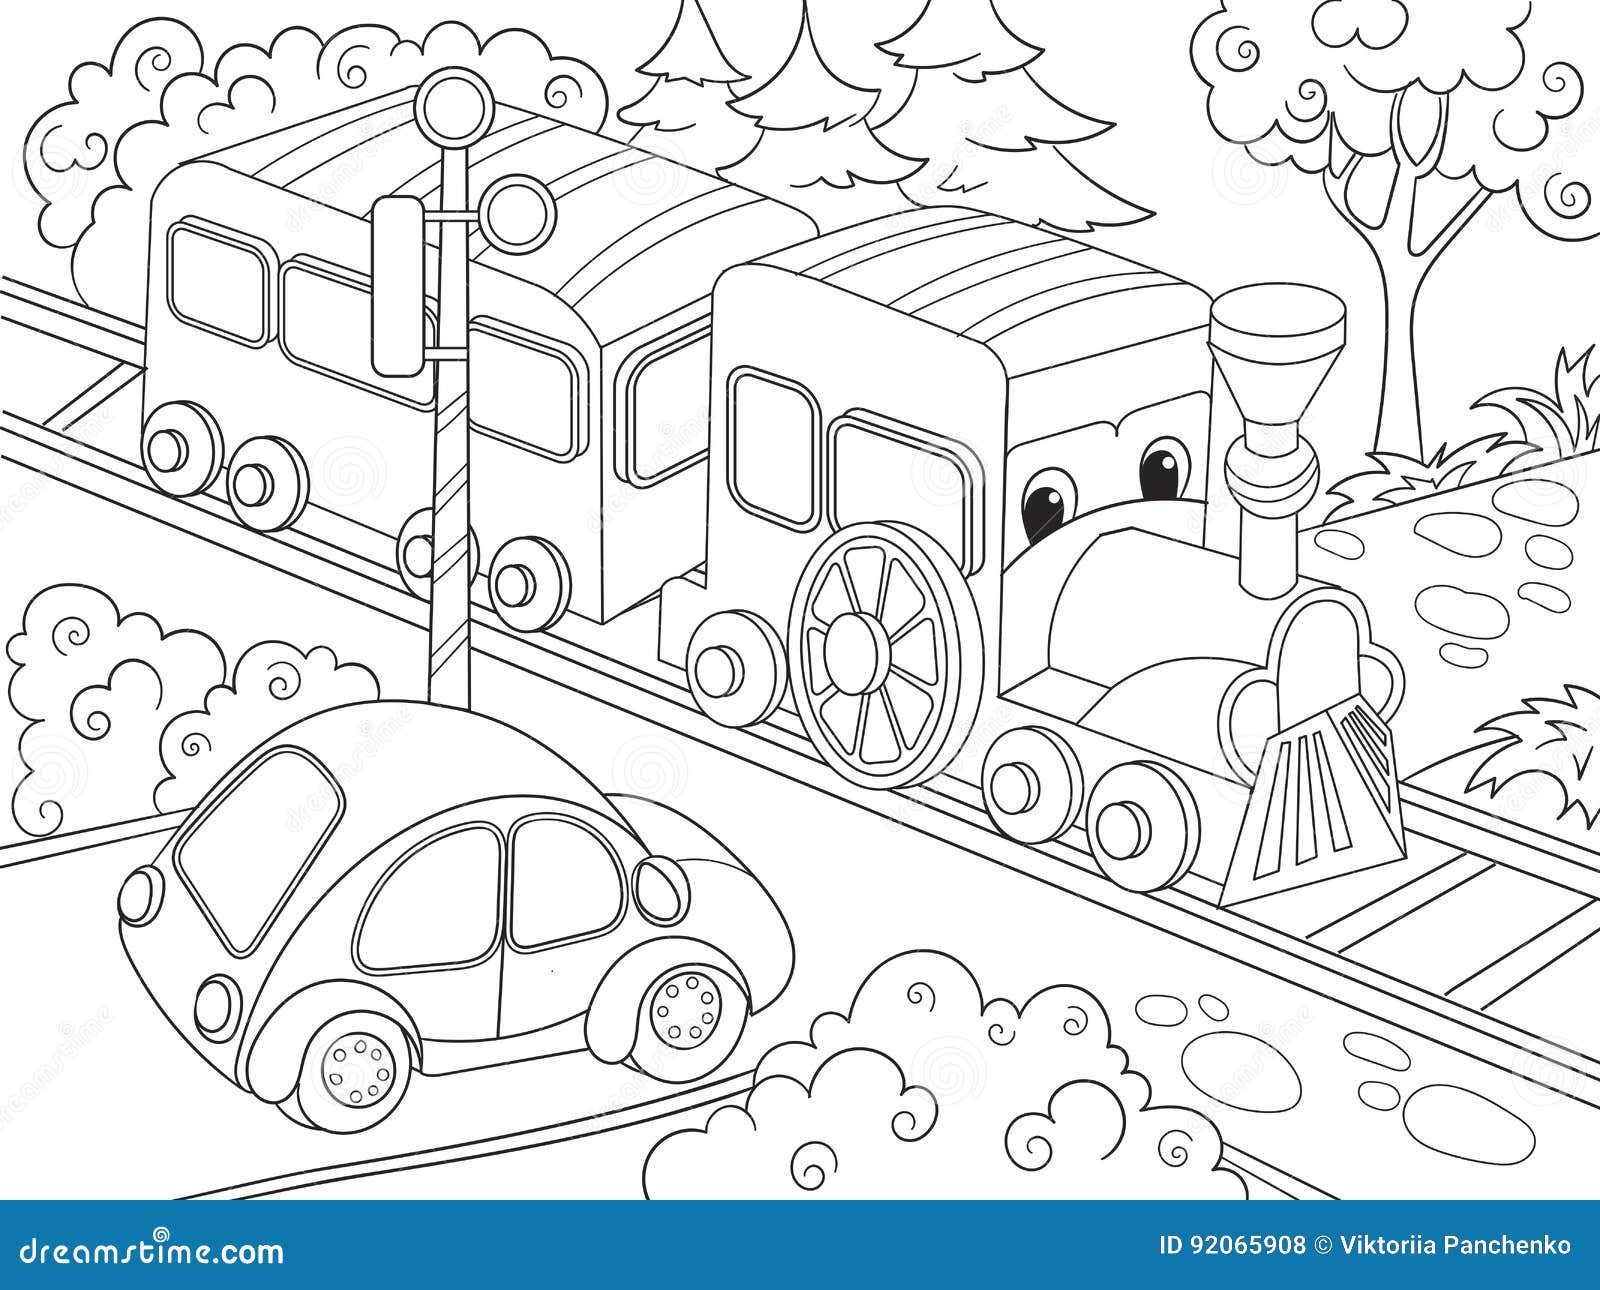 Desenhos para colorir de desenho de uma família com seu carro para colorir  